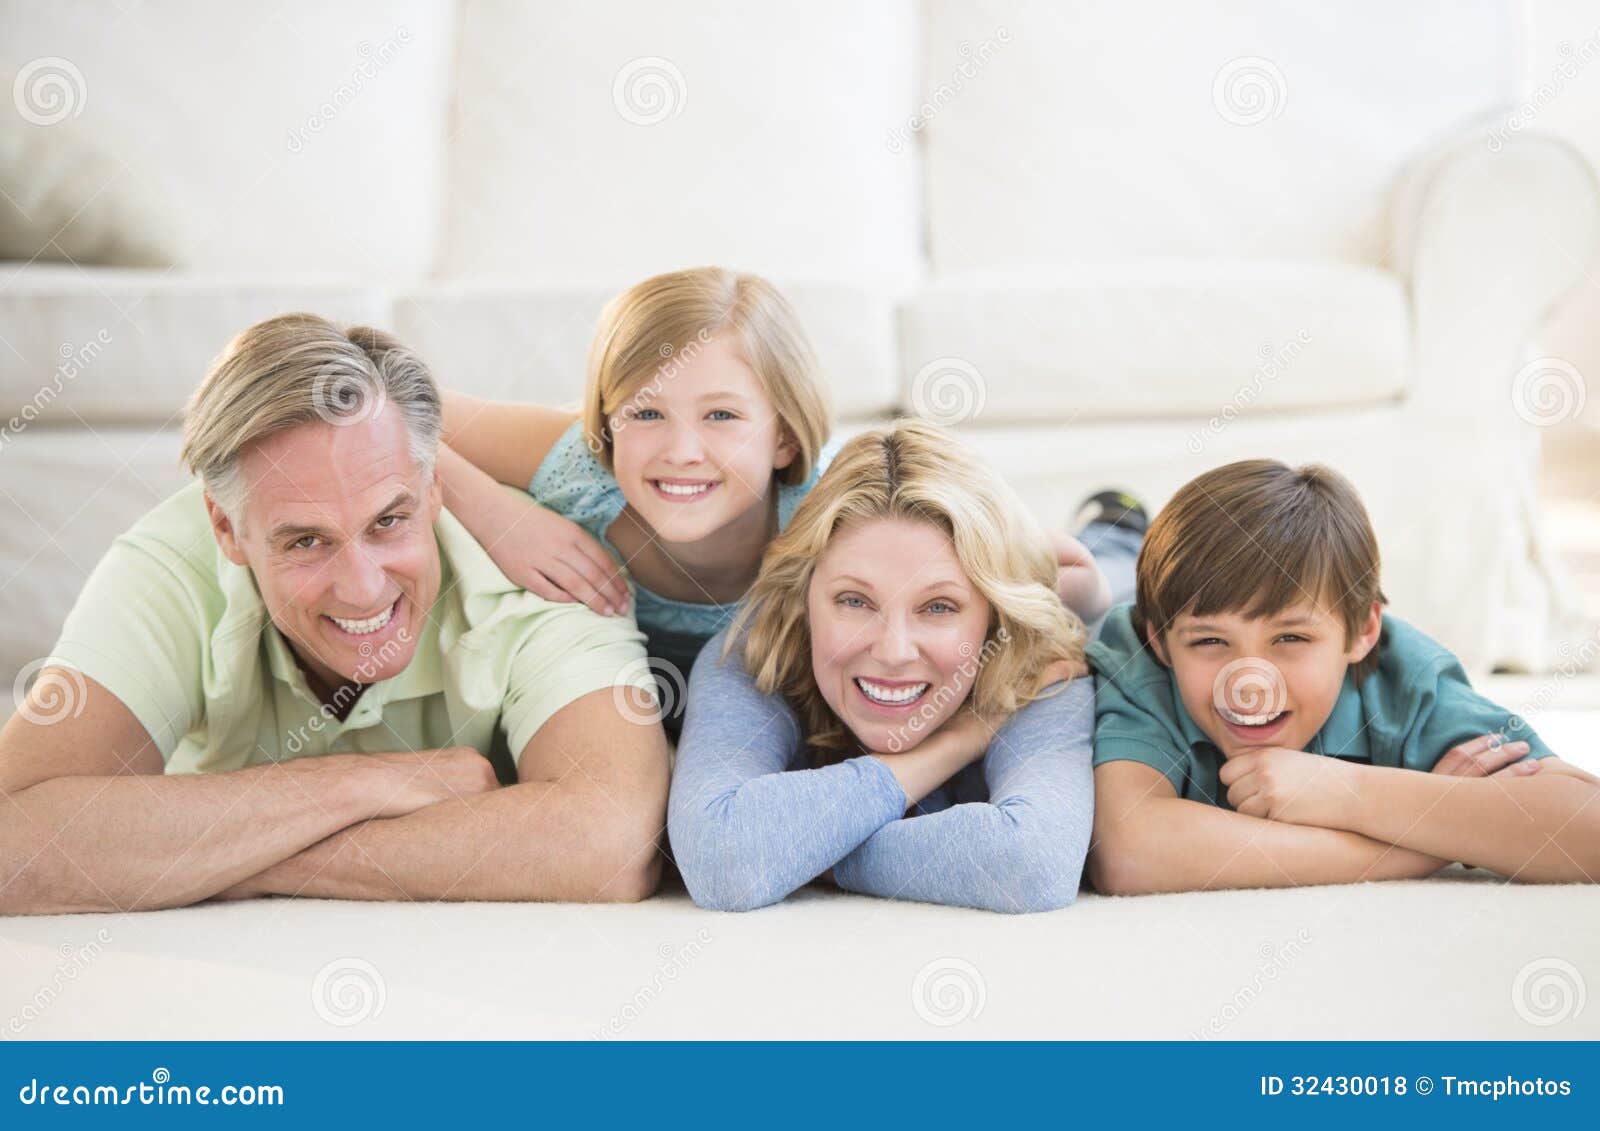 family lying in living room